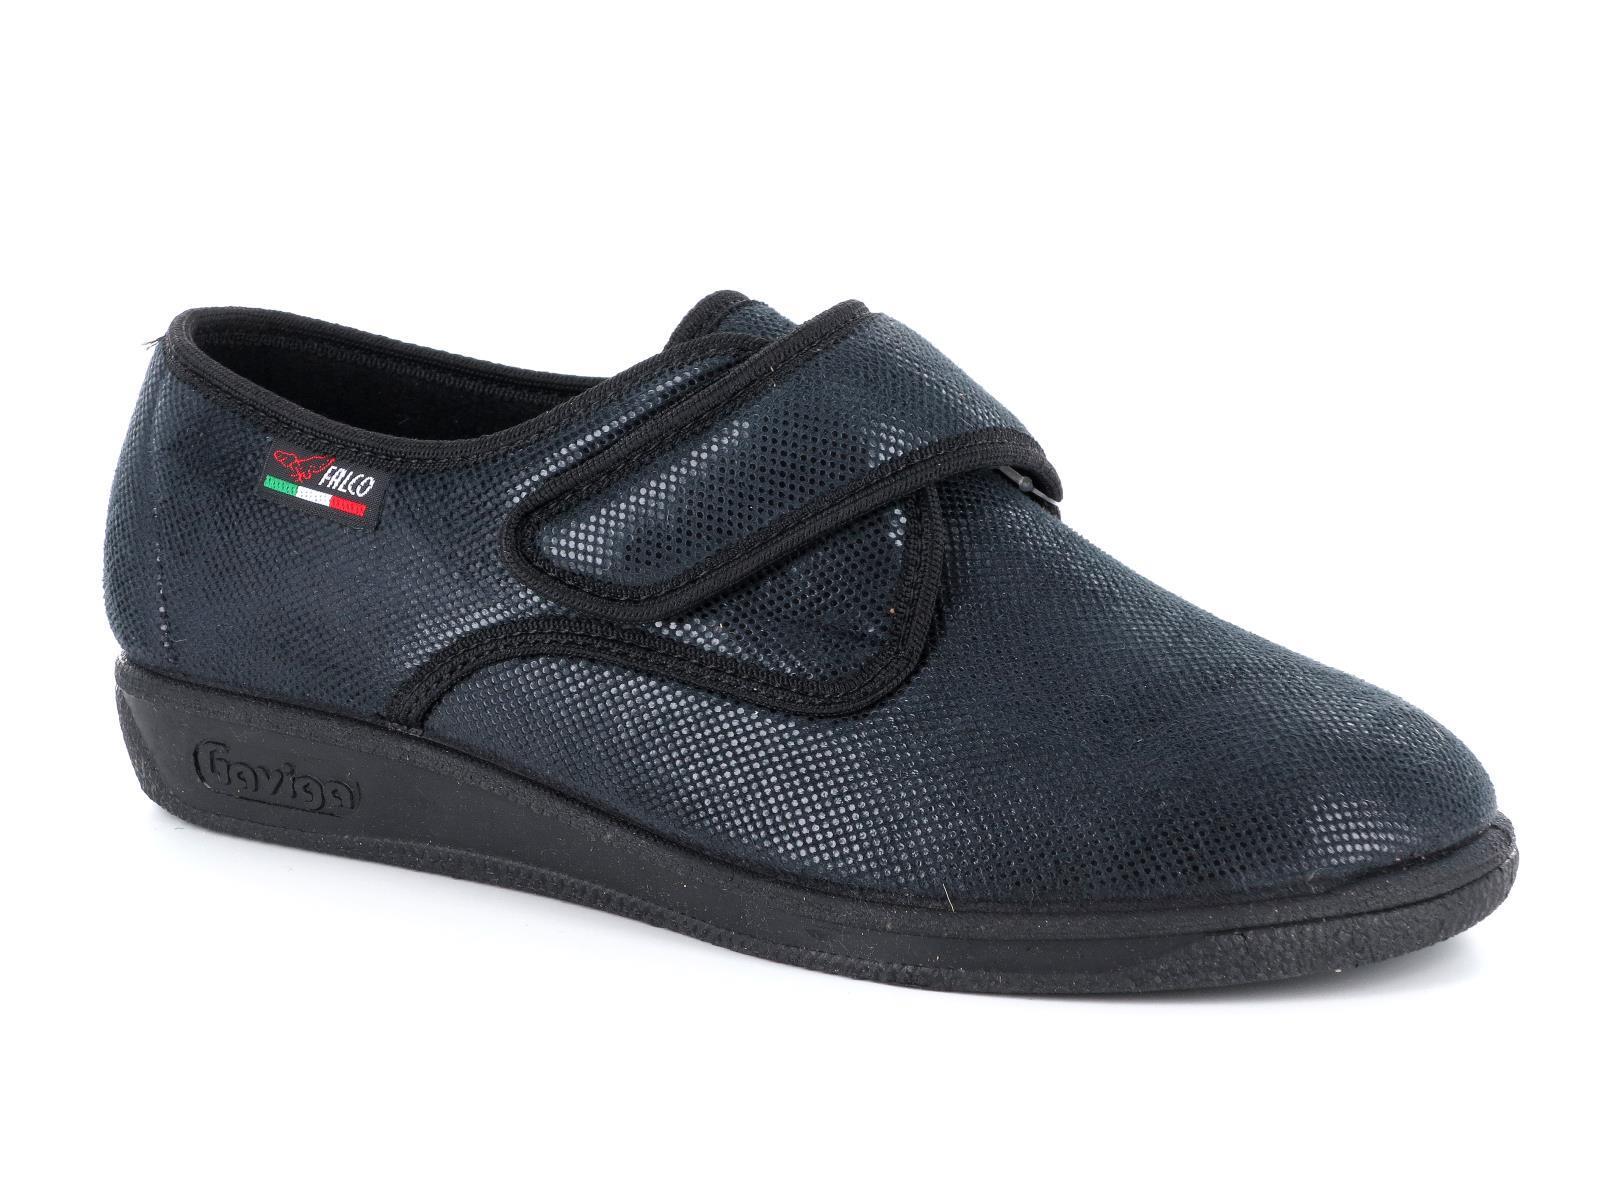 Gaviga 6926 Scarpe pantofole comfort da donna in pelle sintetica con strappo nel colore grigio e nero